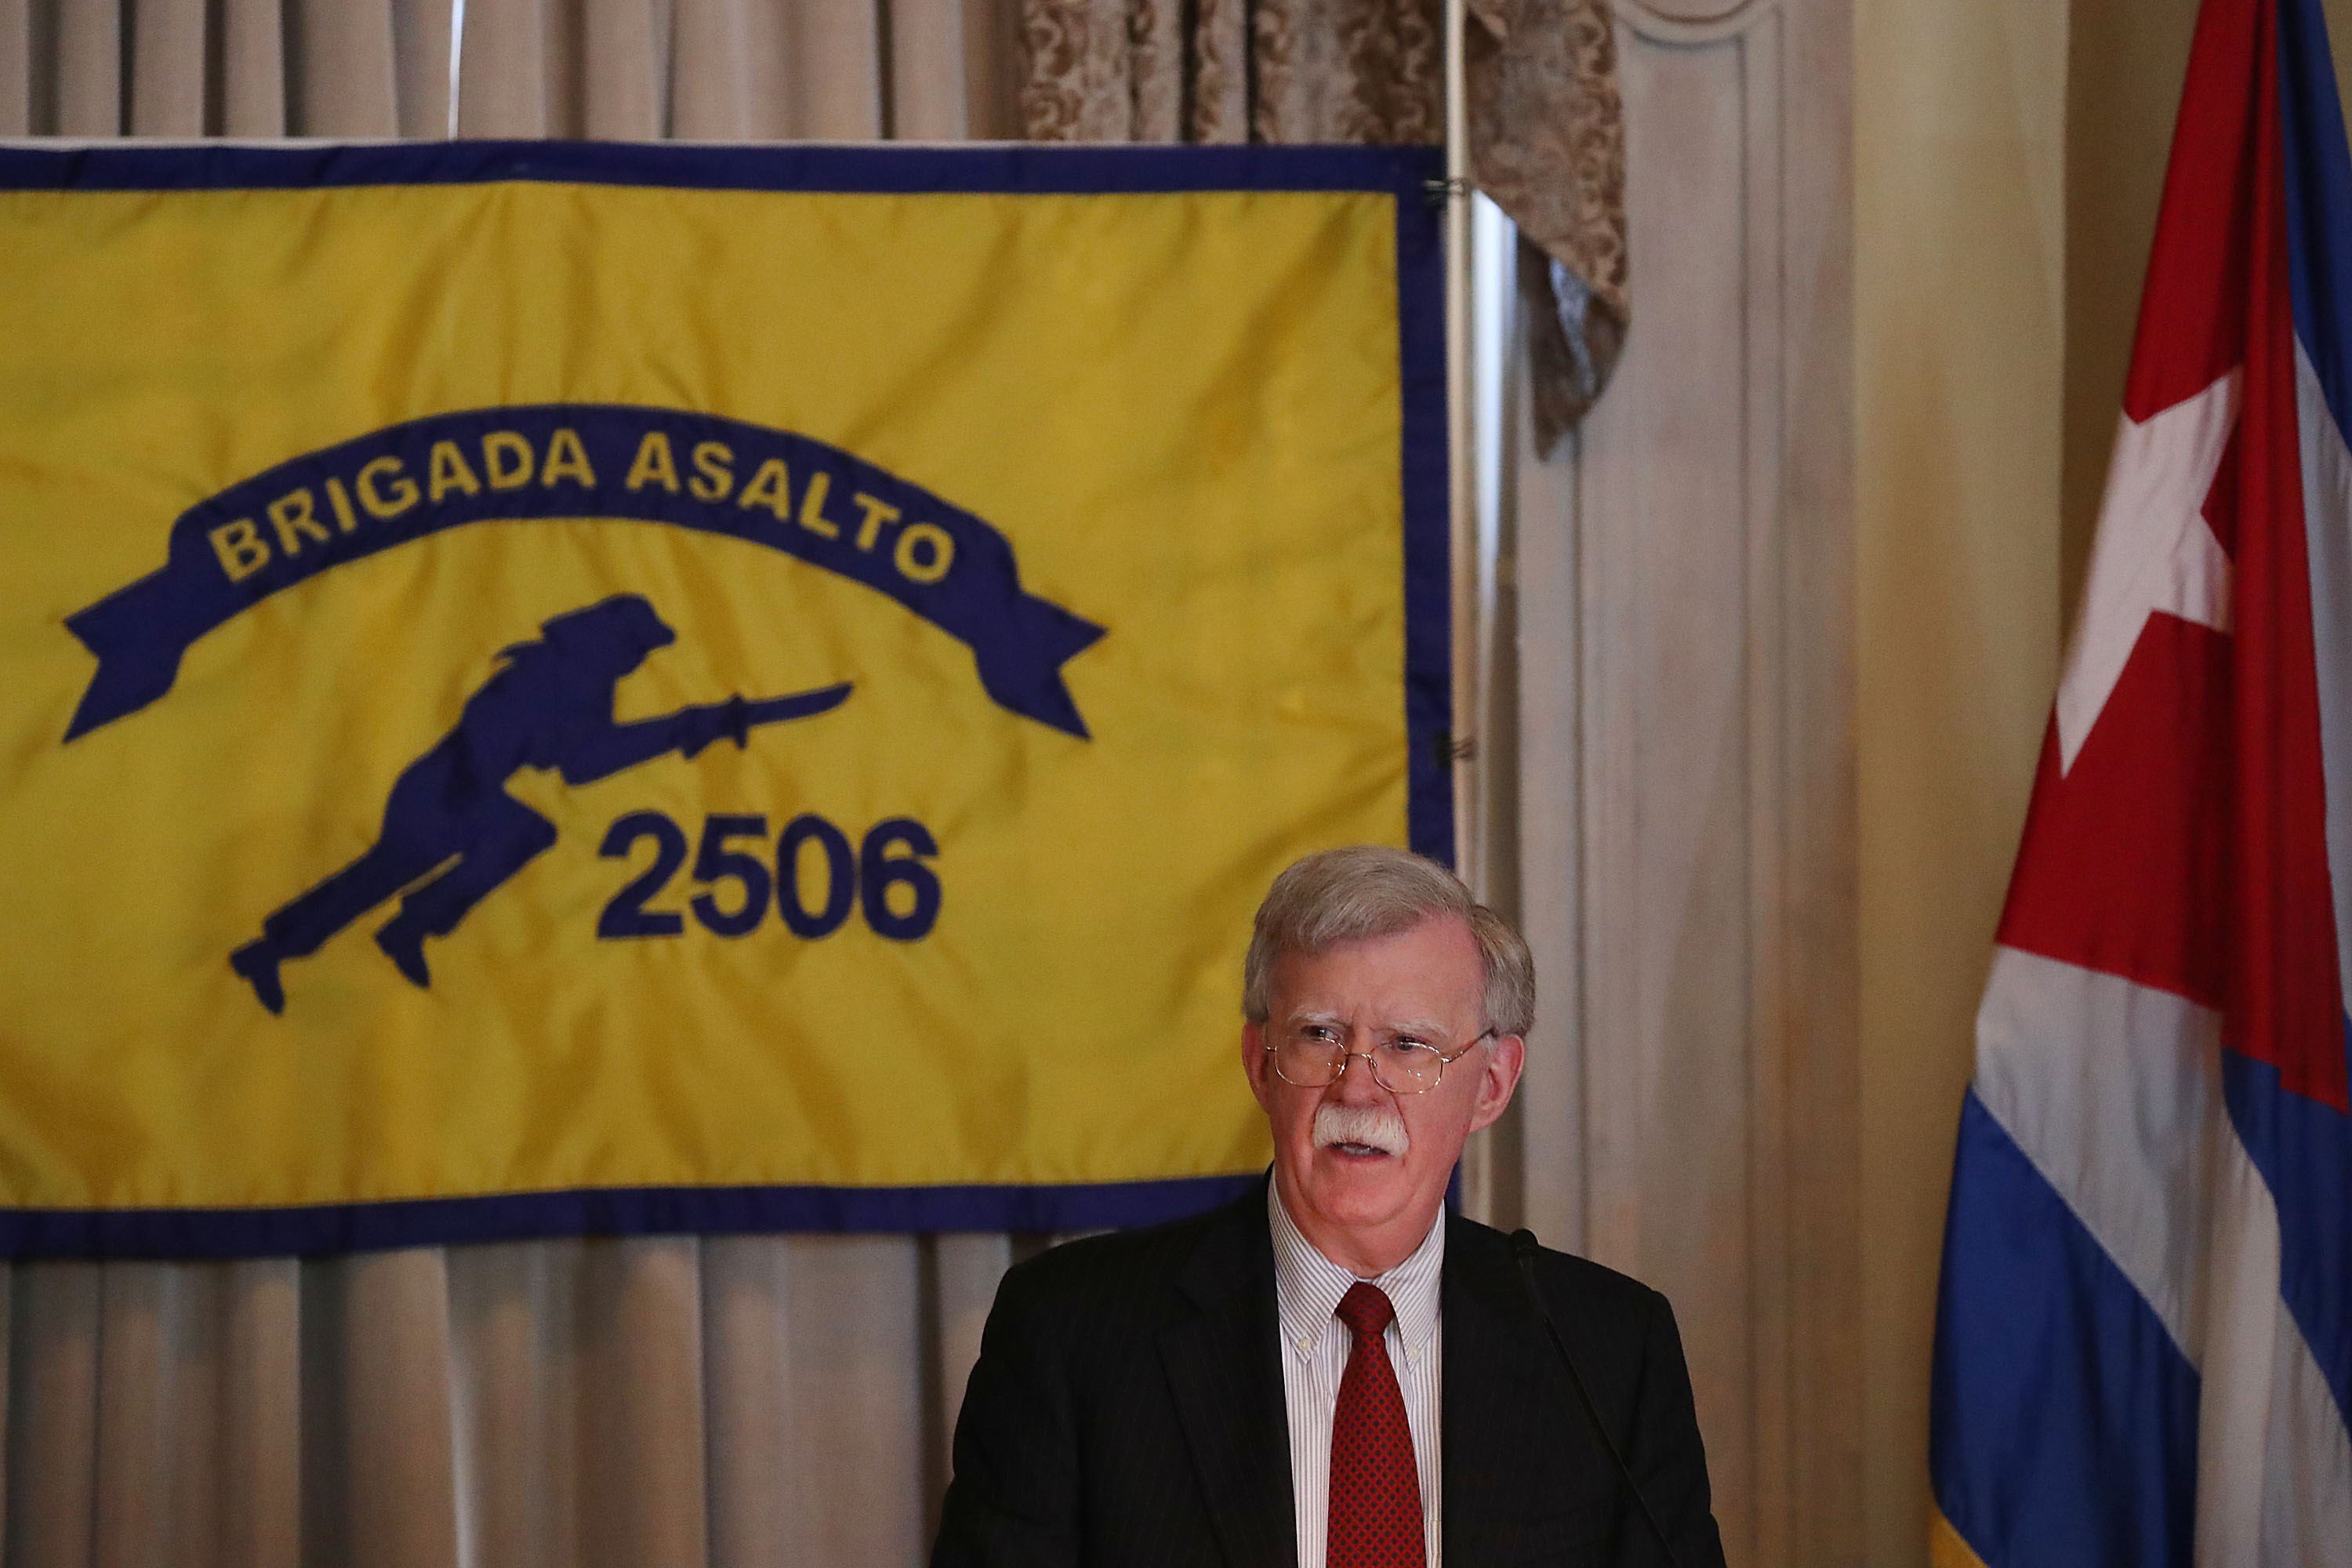 El consejero de Seguridad Nacional, John R. Bolton, habla con exilianos cubanos en Miami. (Foto Prensa Libre: AFP)